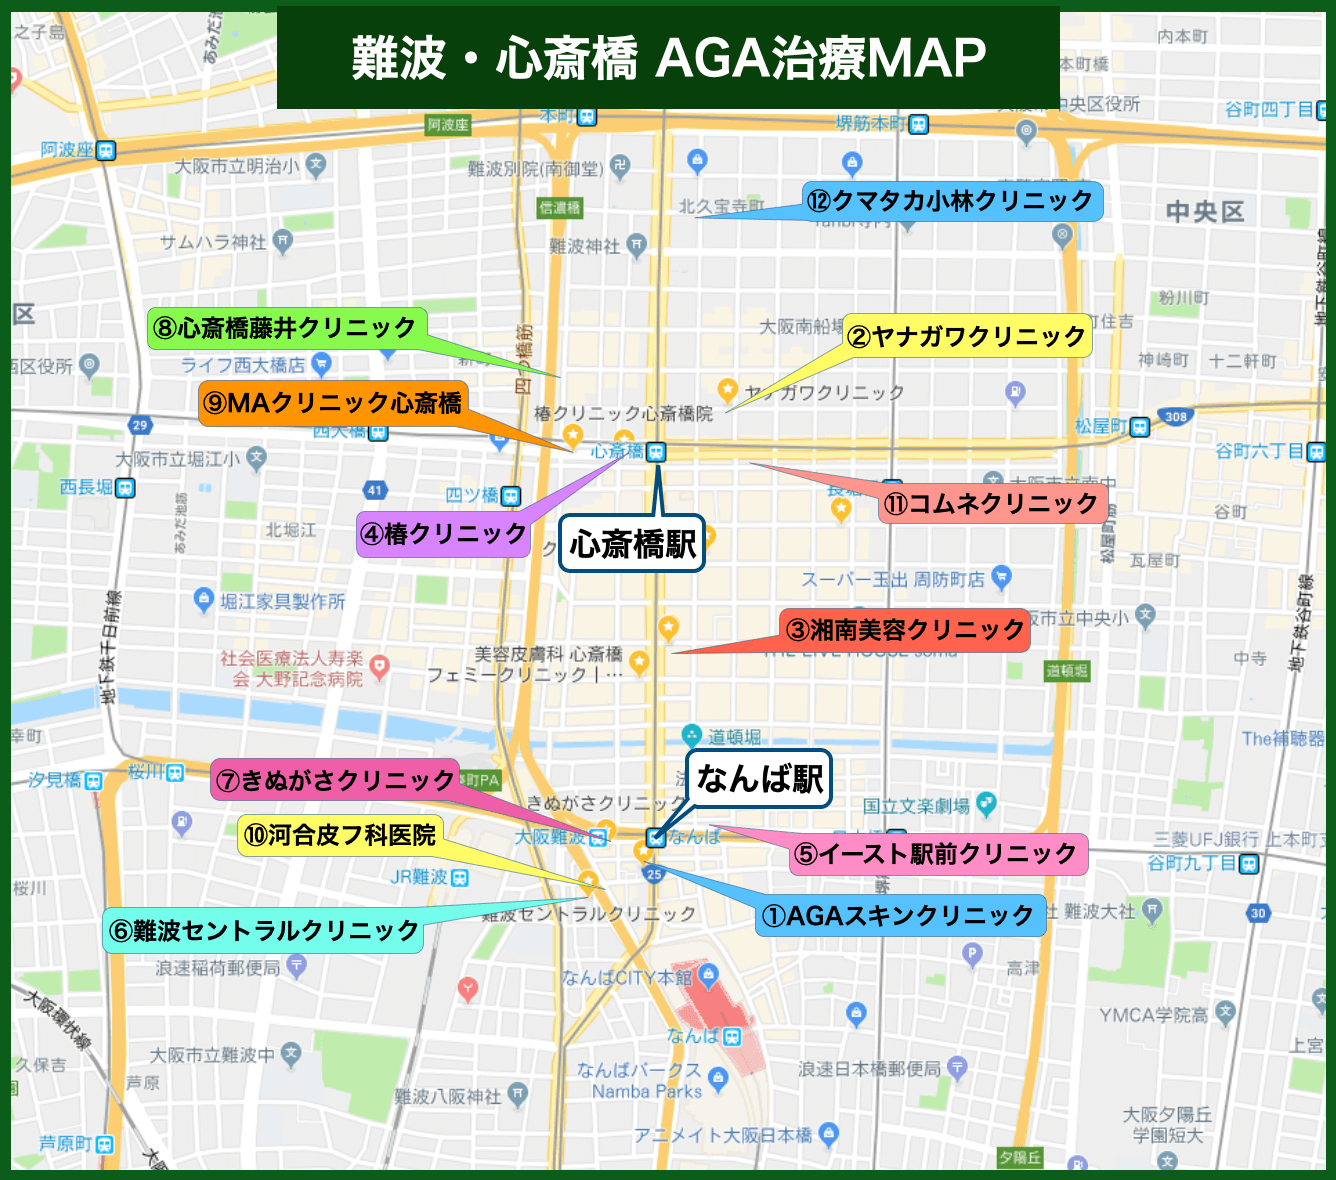 難波・心斎橋 AGA治療MAP